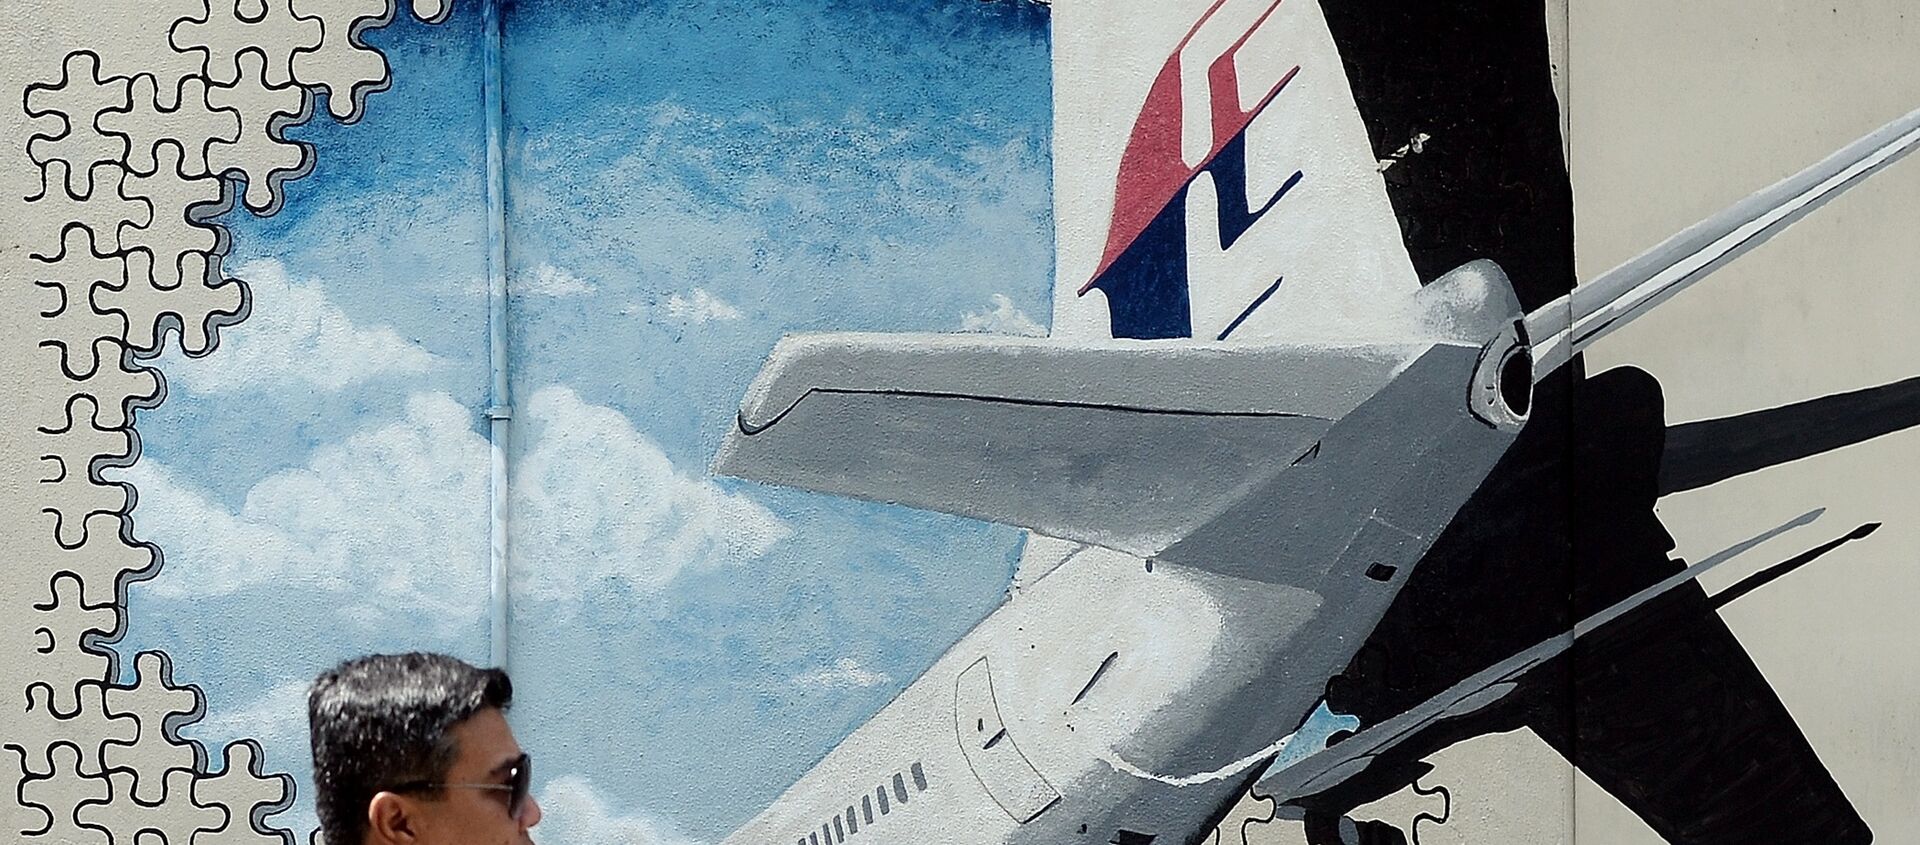 Malezya Havayollarına ait MH370 sefer sayılı uçak - Sputnik Türkiye, 1920, 19.10.2018